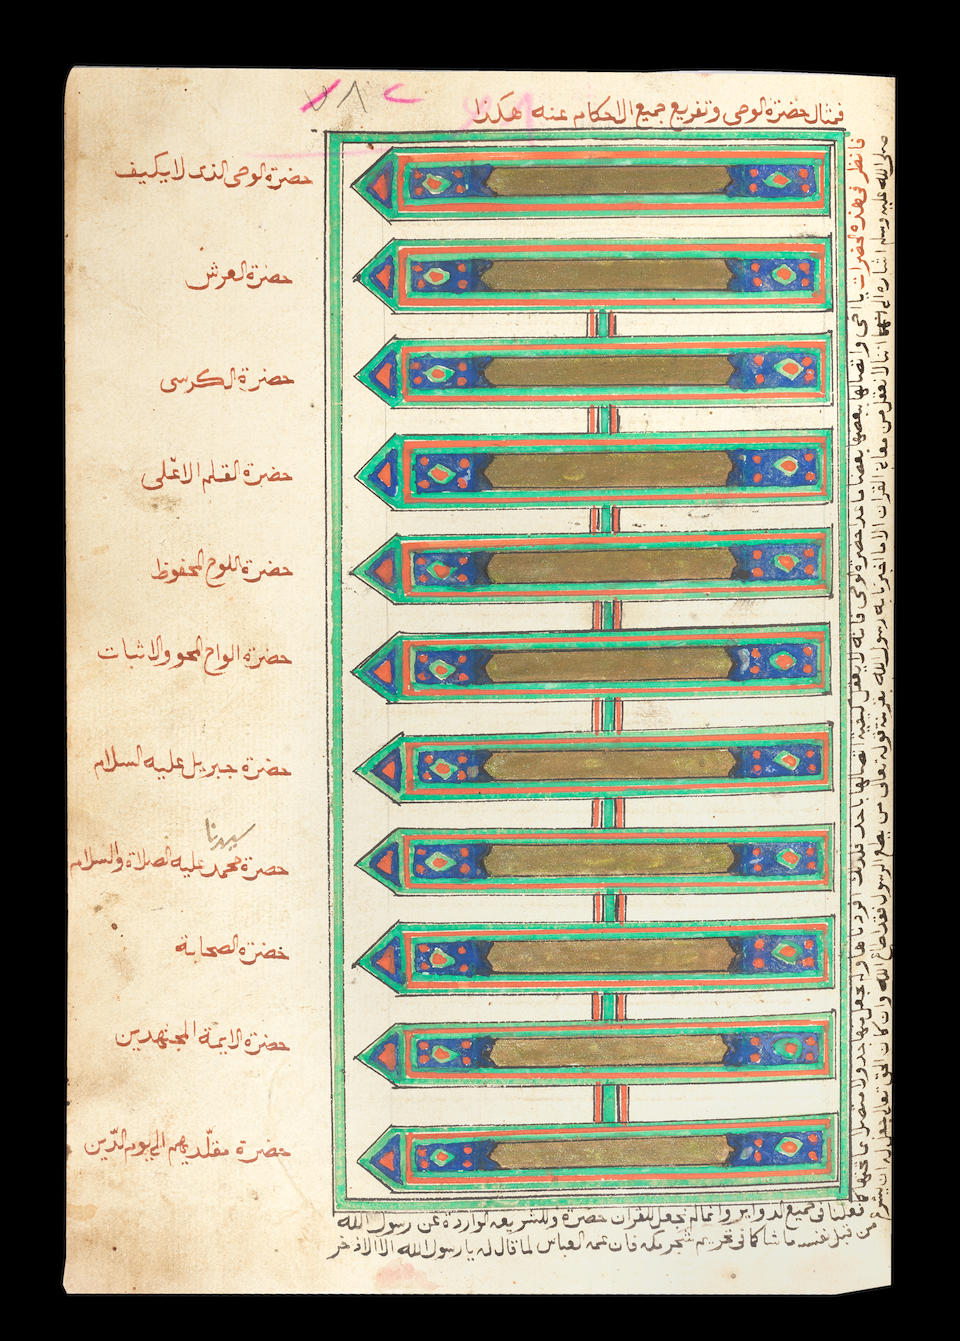 Shaykh 'Abd al-Wahab bin Ahmad al-Sha'rani (d. AD 1565), Kitab al-Mizan, a treatise on the four Sunni schools of law, with several diagrams Ottoman, probably Egypt, dated 6th Sha'ban 1273/31st March 1857